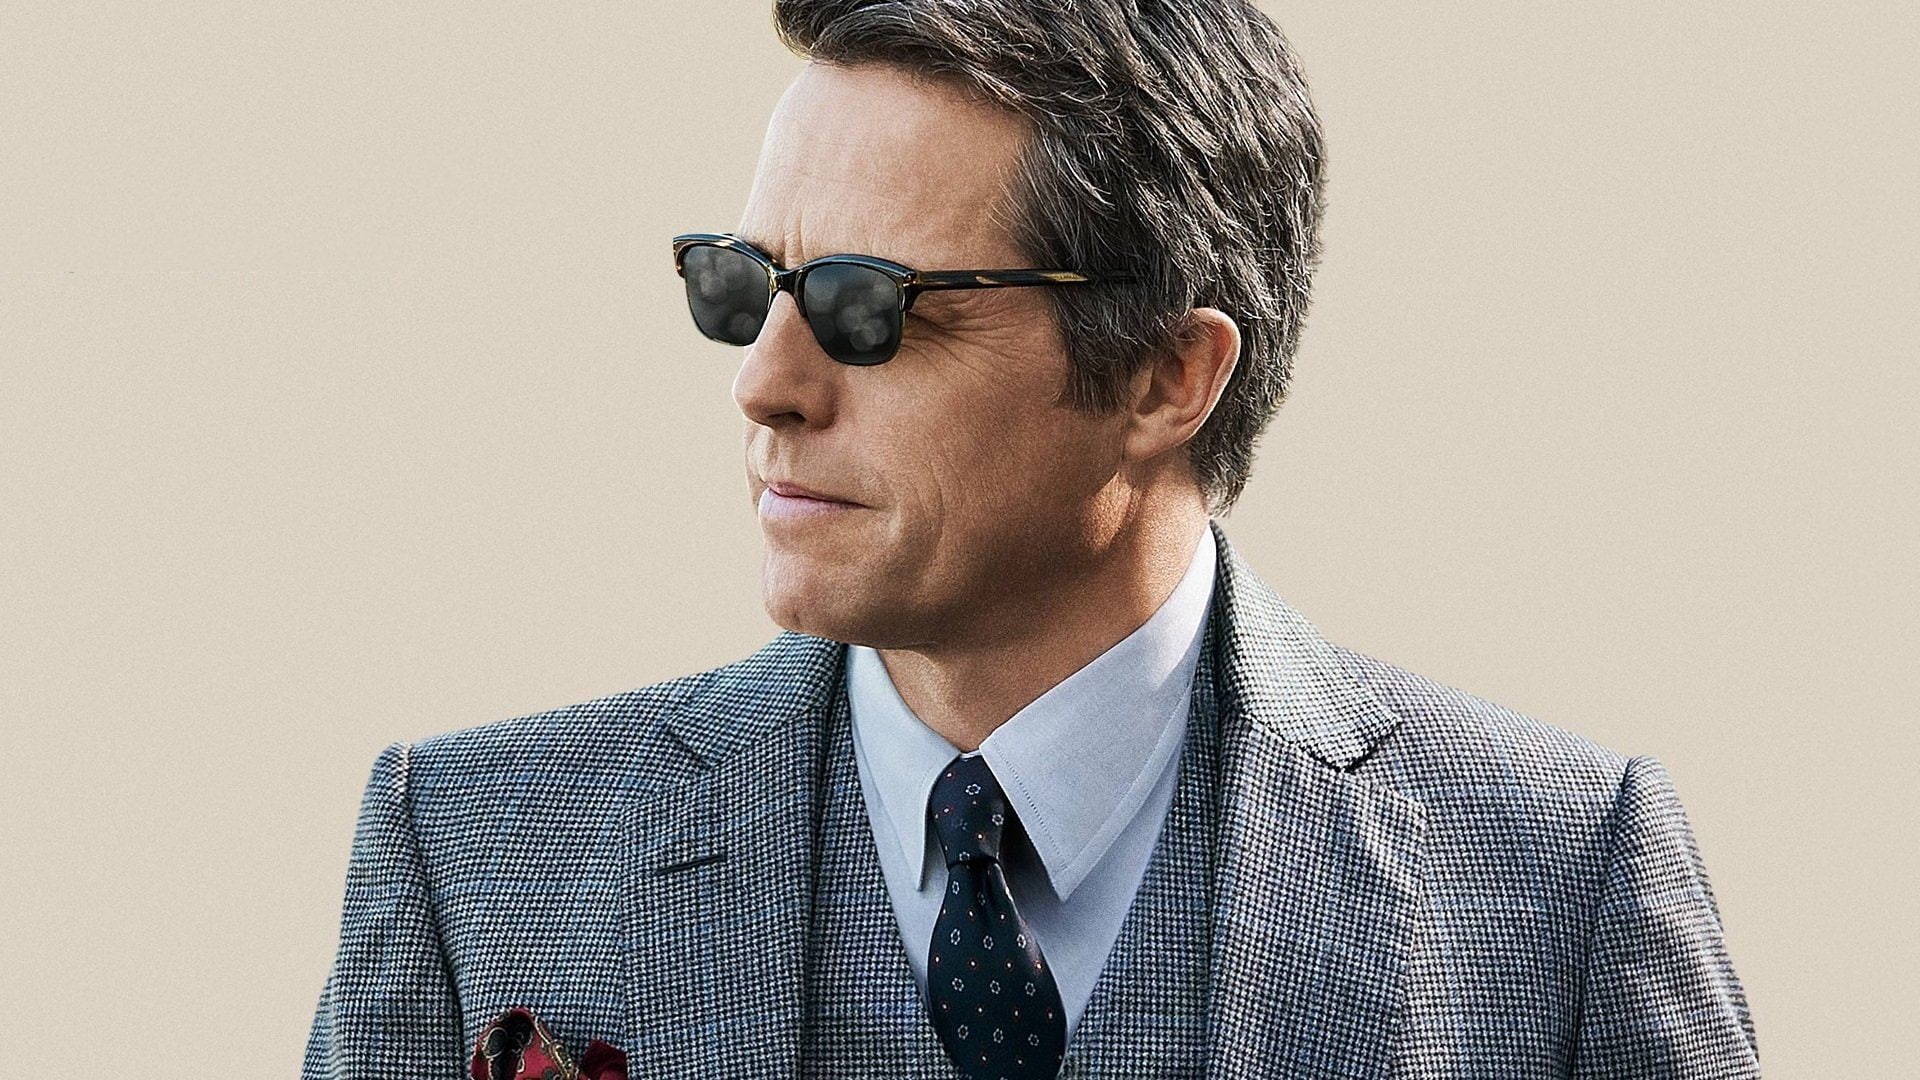 Hugh Grant Sunglasses Wallpaper